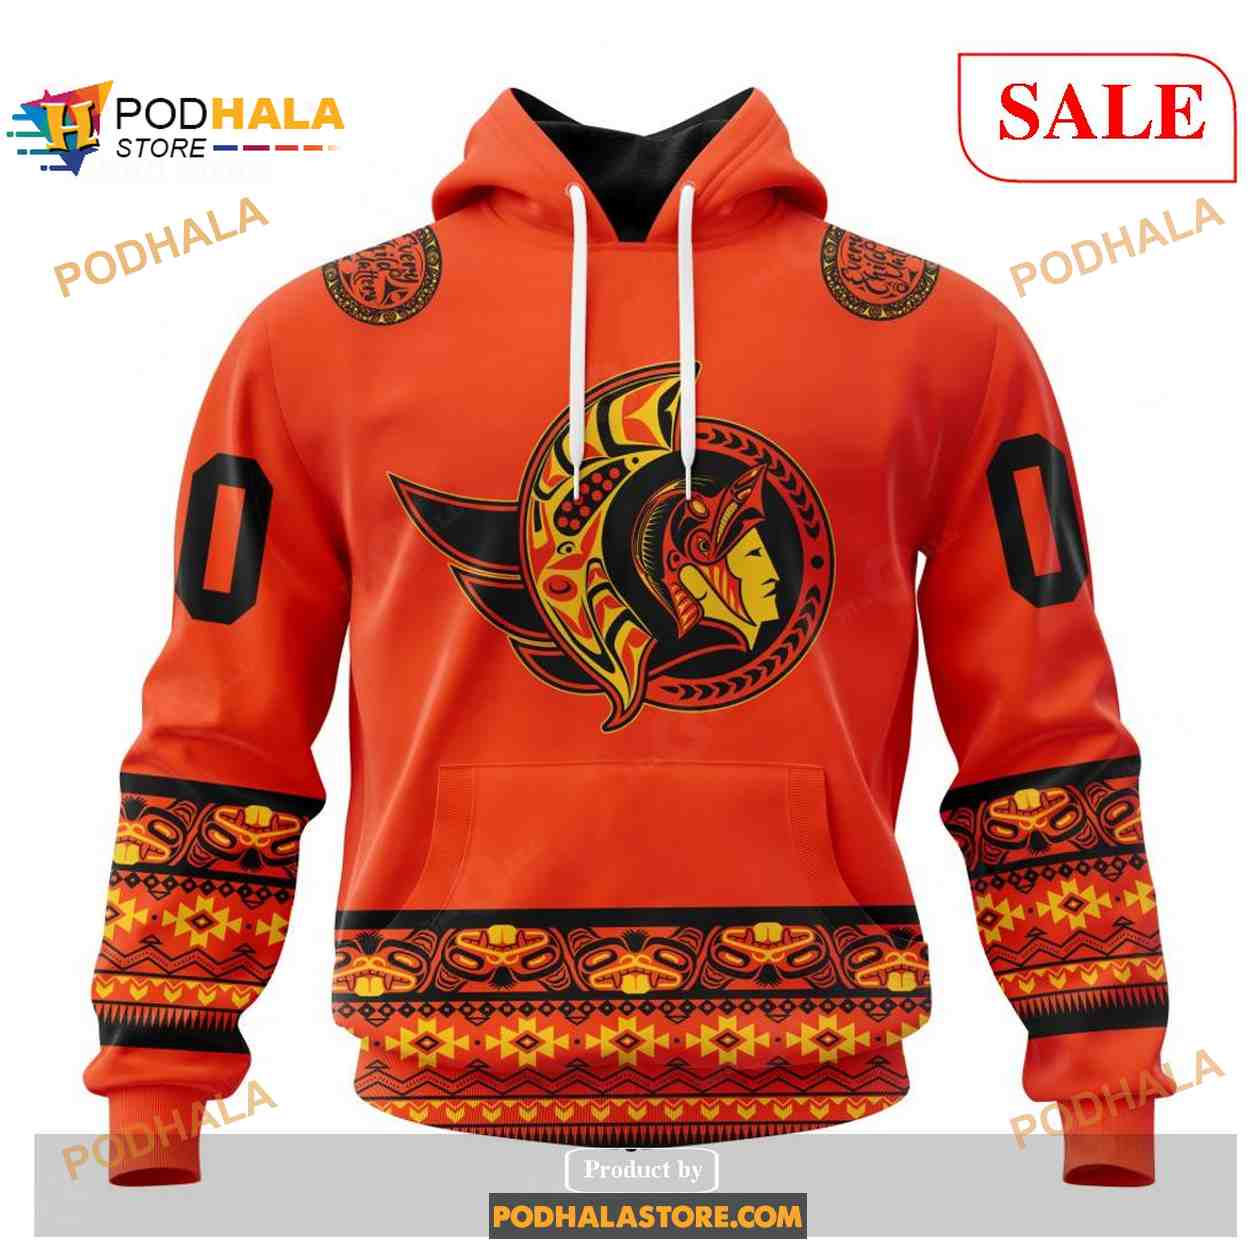 Top-selling item] NHL Ottawa Senators Knitting Pattern Ugly Christmas  Sweater